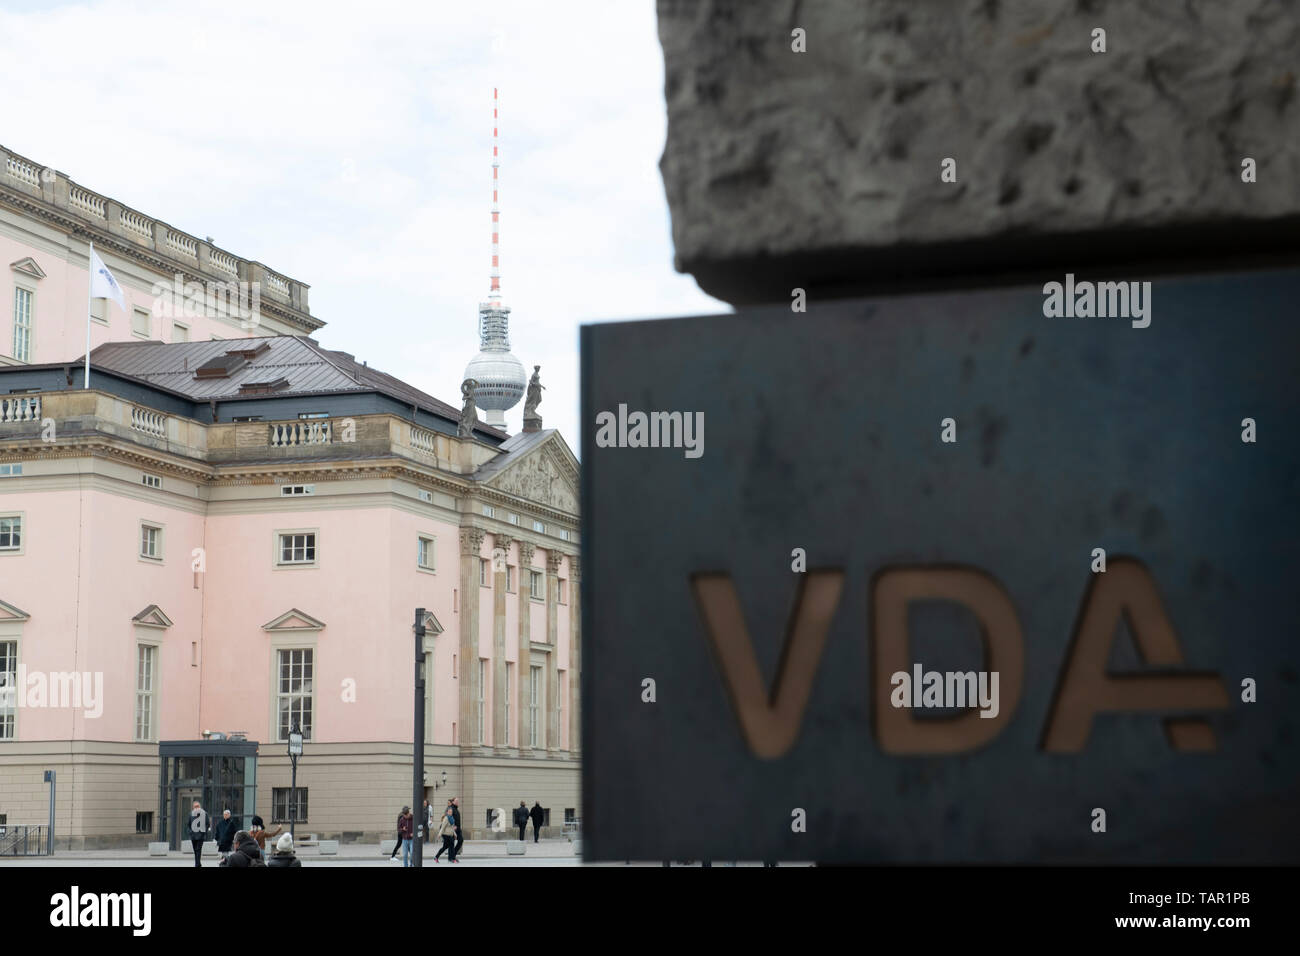 Berlino, Germania. 05 Maggio, 2019. "VDA" (Associazione Tedesca dell'industria automobilistica) è scritto sul cartello sulla facciata di un edificio in Bebelplatz. Questo è dove la VDA ha il suo quartier generale. Credito: Paolo Zinken/dpa/Alamy Live News Foto Stock